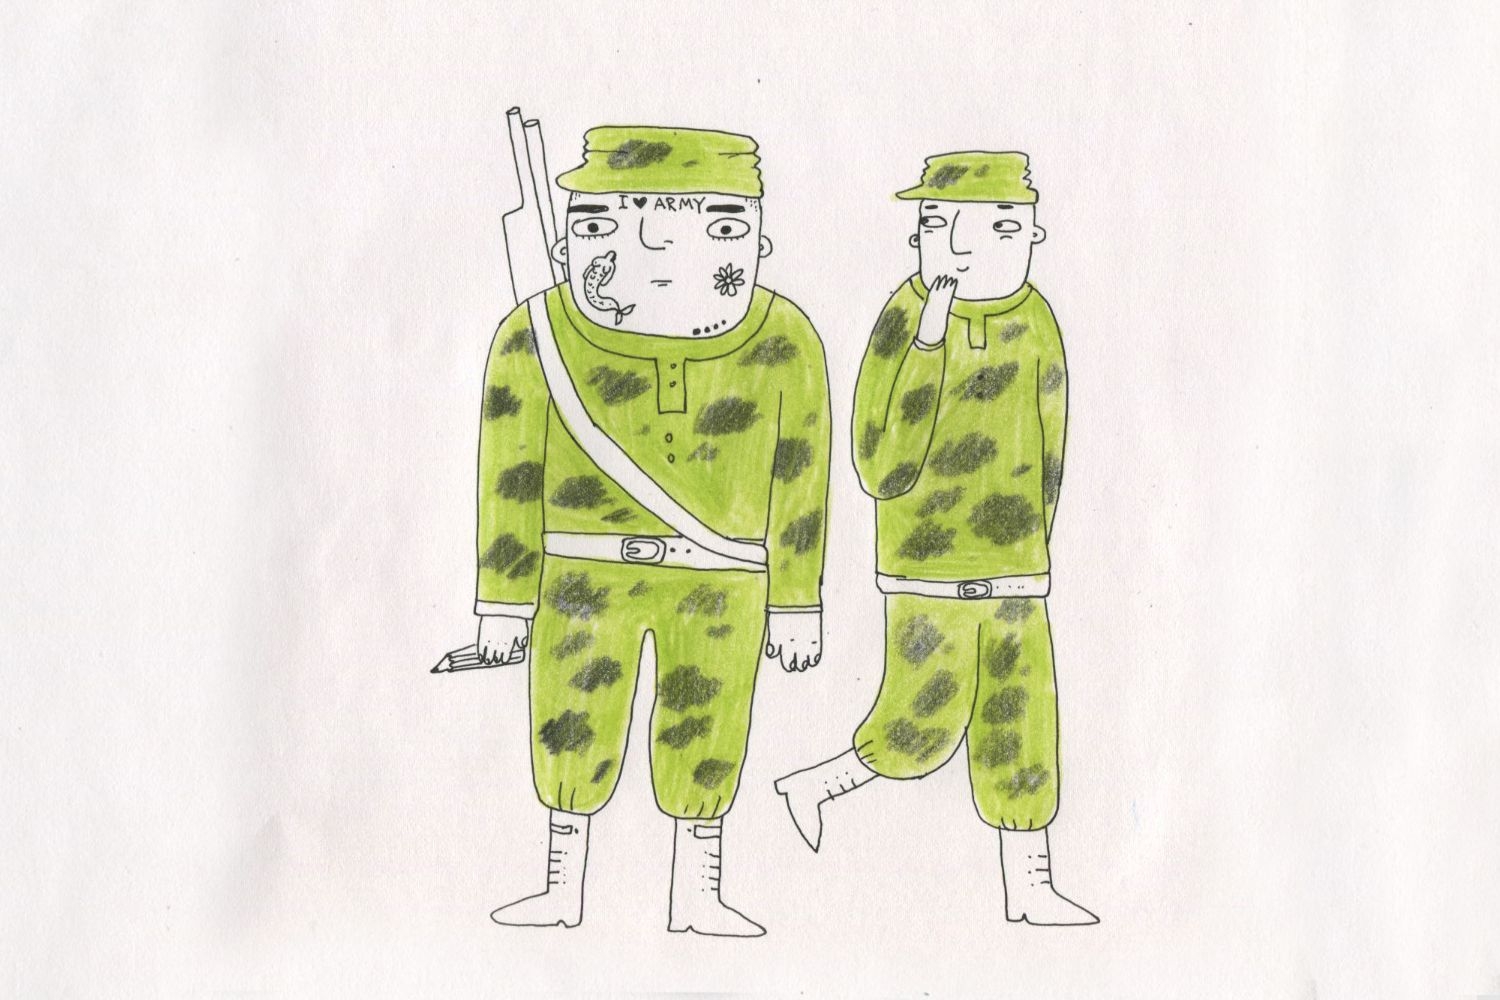 Тест армии россии. Армия рисунки. Рисунки про армию детские. Армия рисунок для детей. Армия картинки для детей.